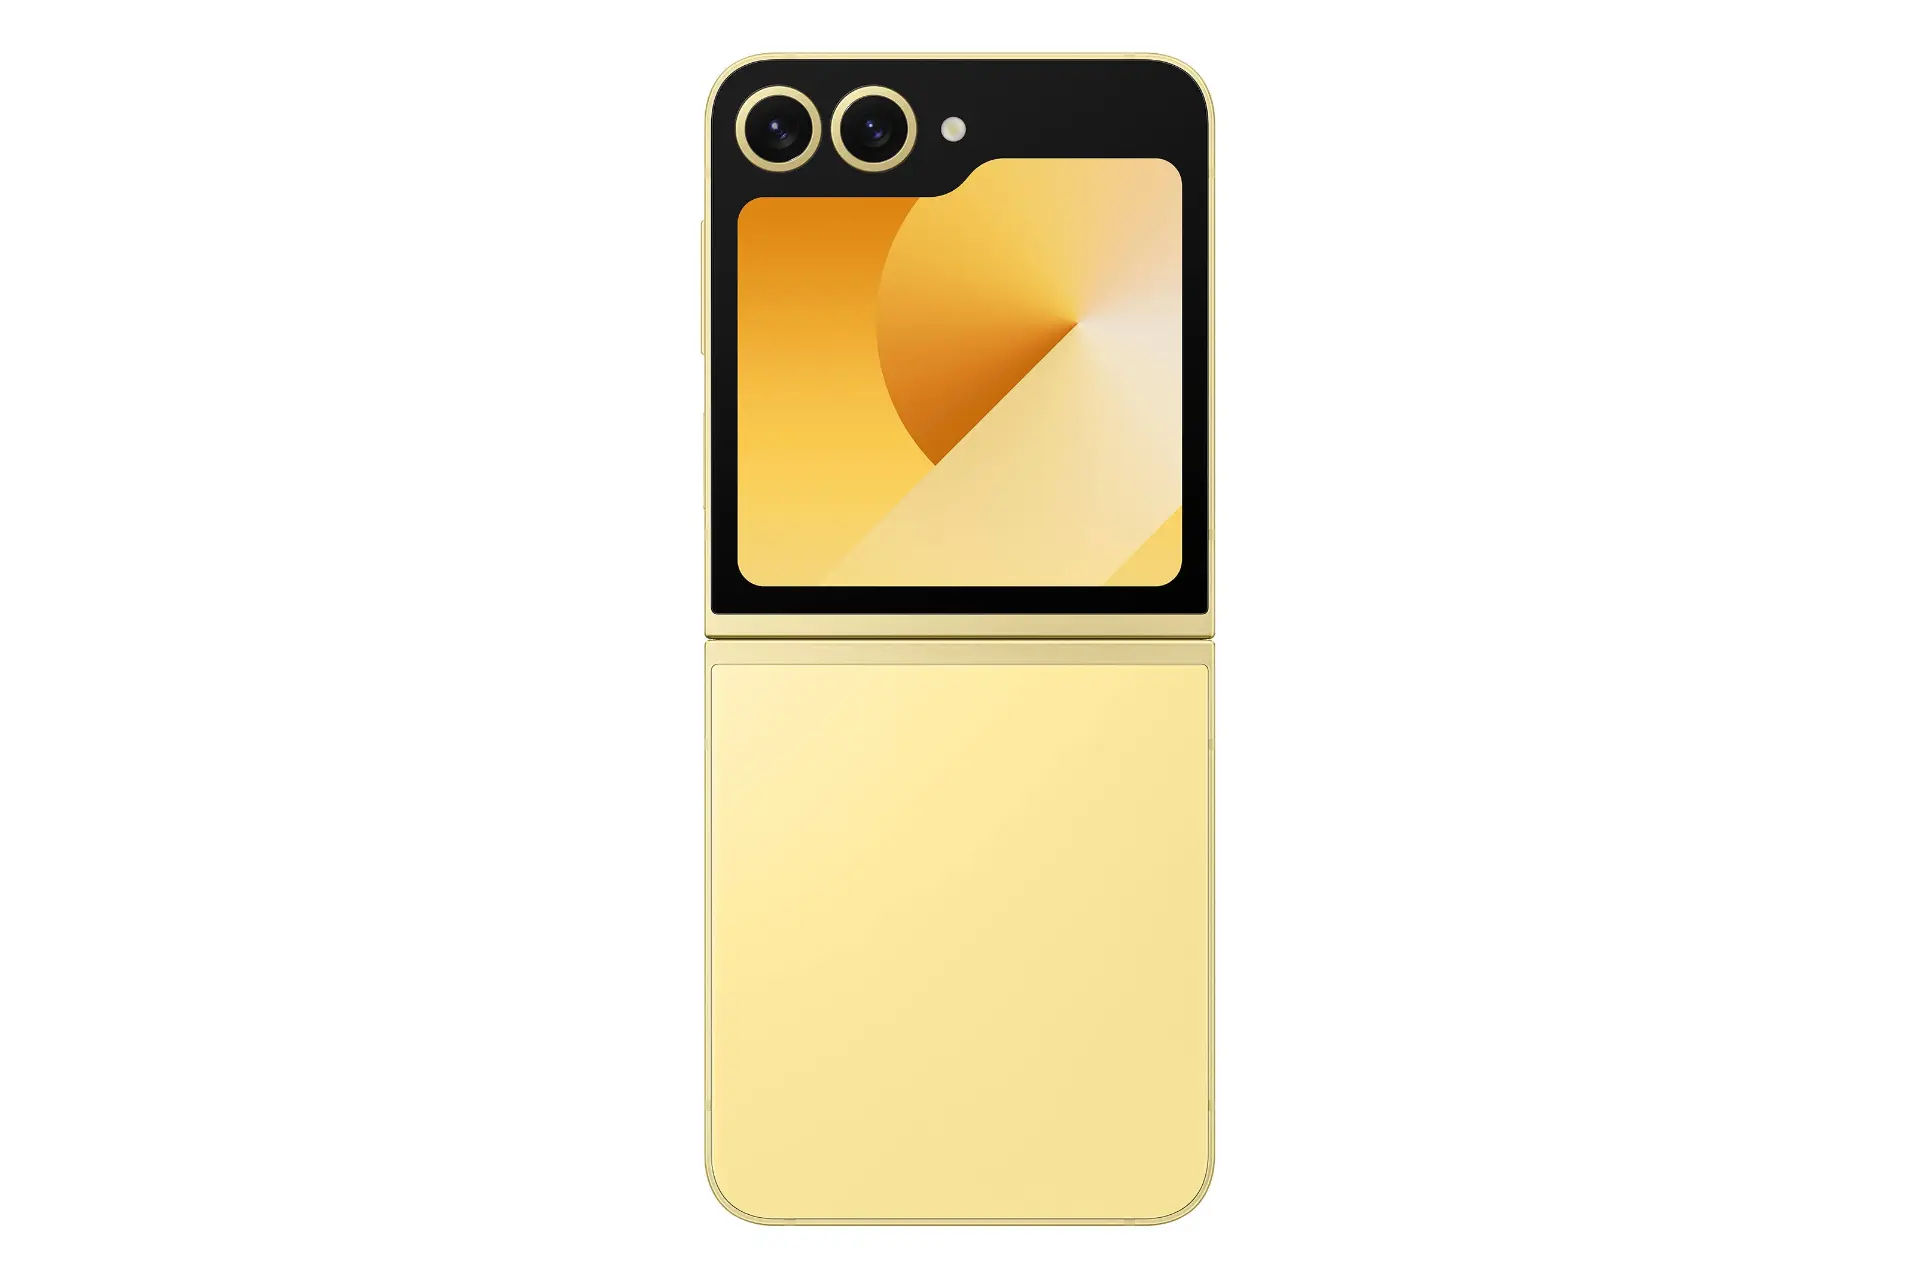 پنل پشت گوشی موبایل گلکسی زد فلیپ 6 سامسونگ زرد در حالت باز / Samsung Galaxy Z Flip6